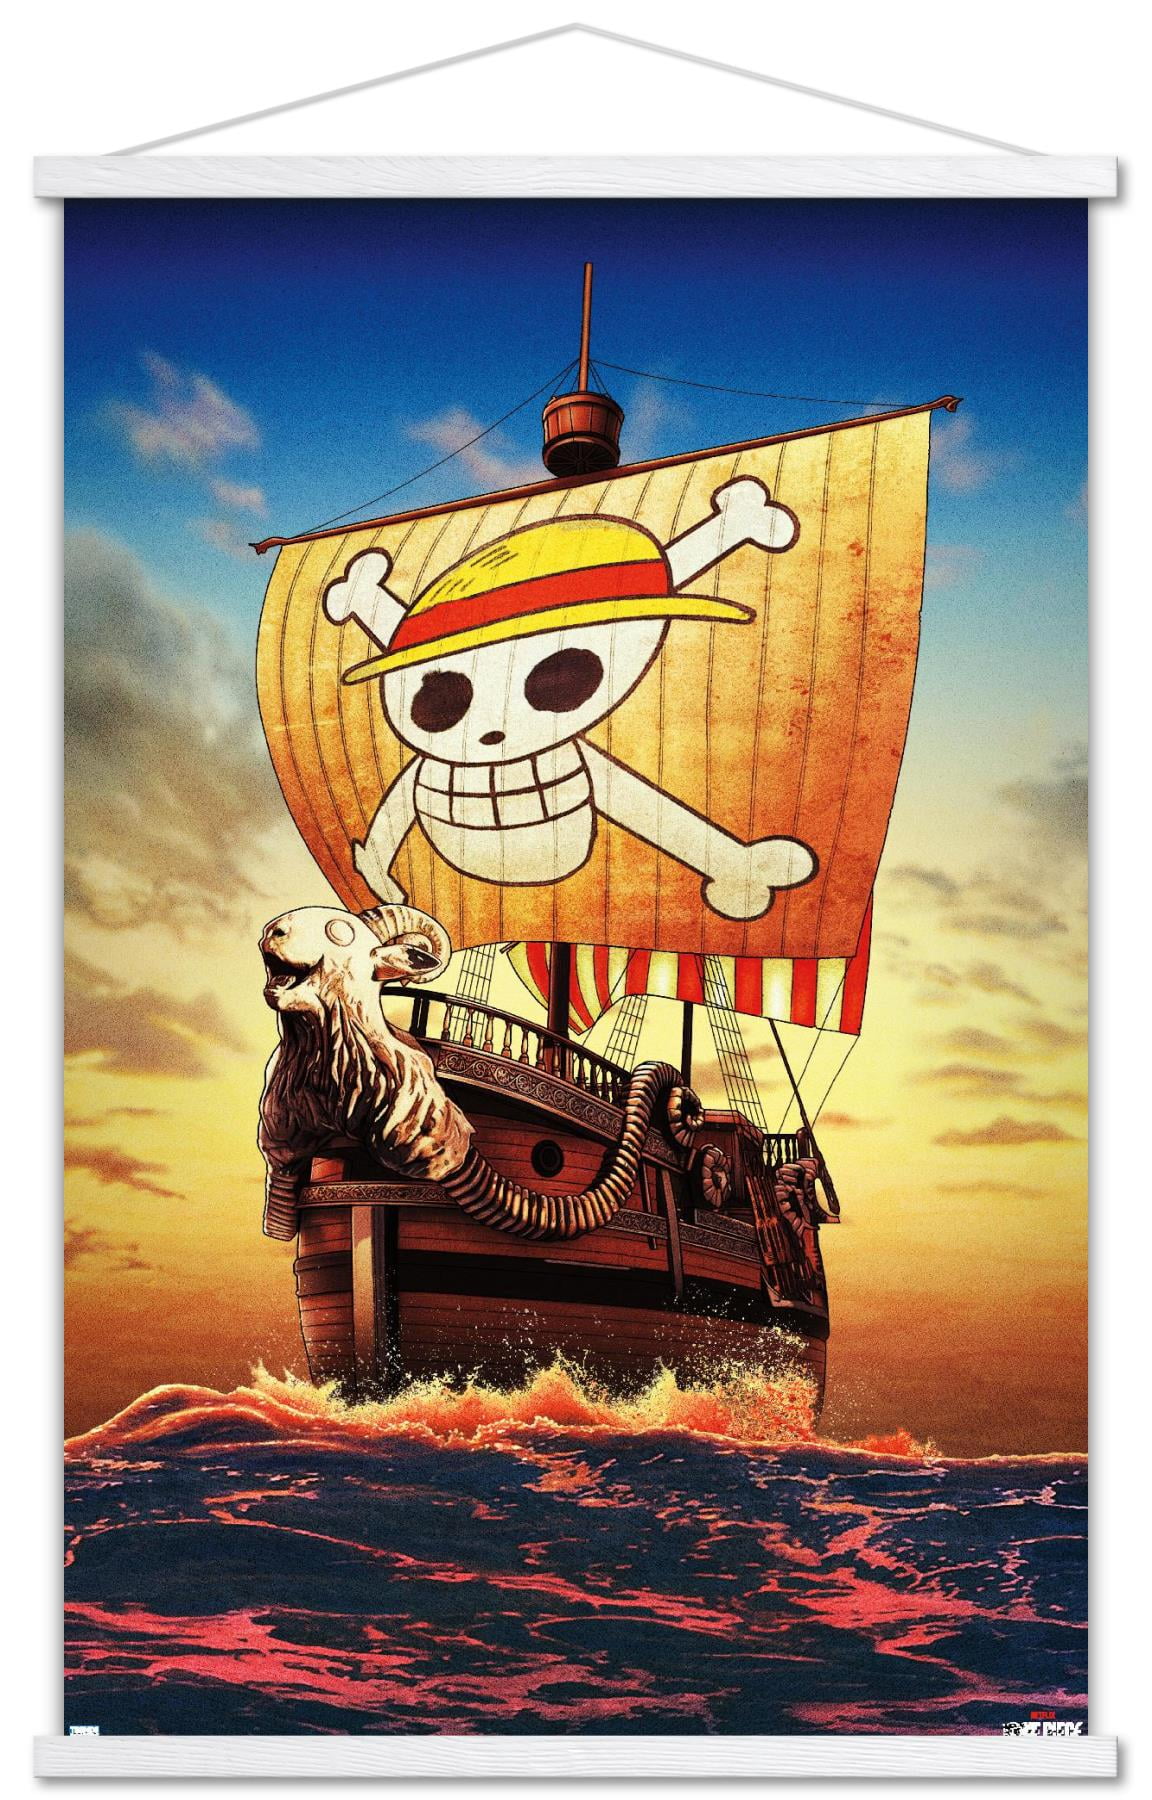 Netflix One Piece - Going Merry One Sheet Wall Poster, 22.375 x 34 